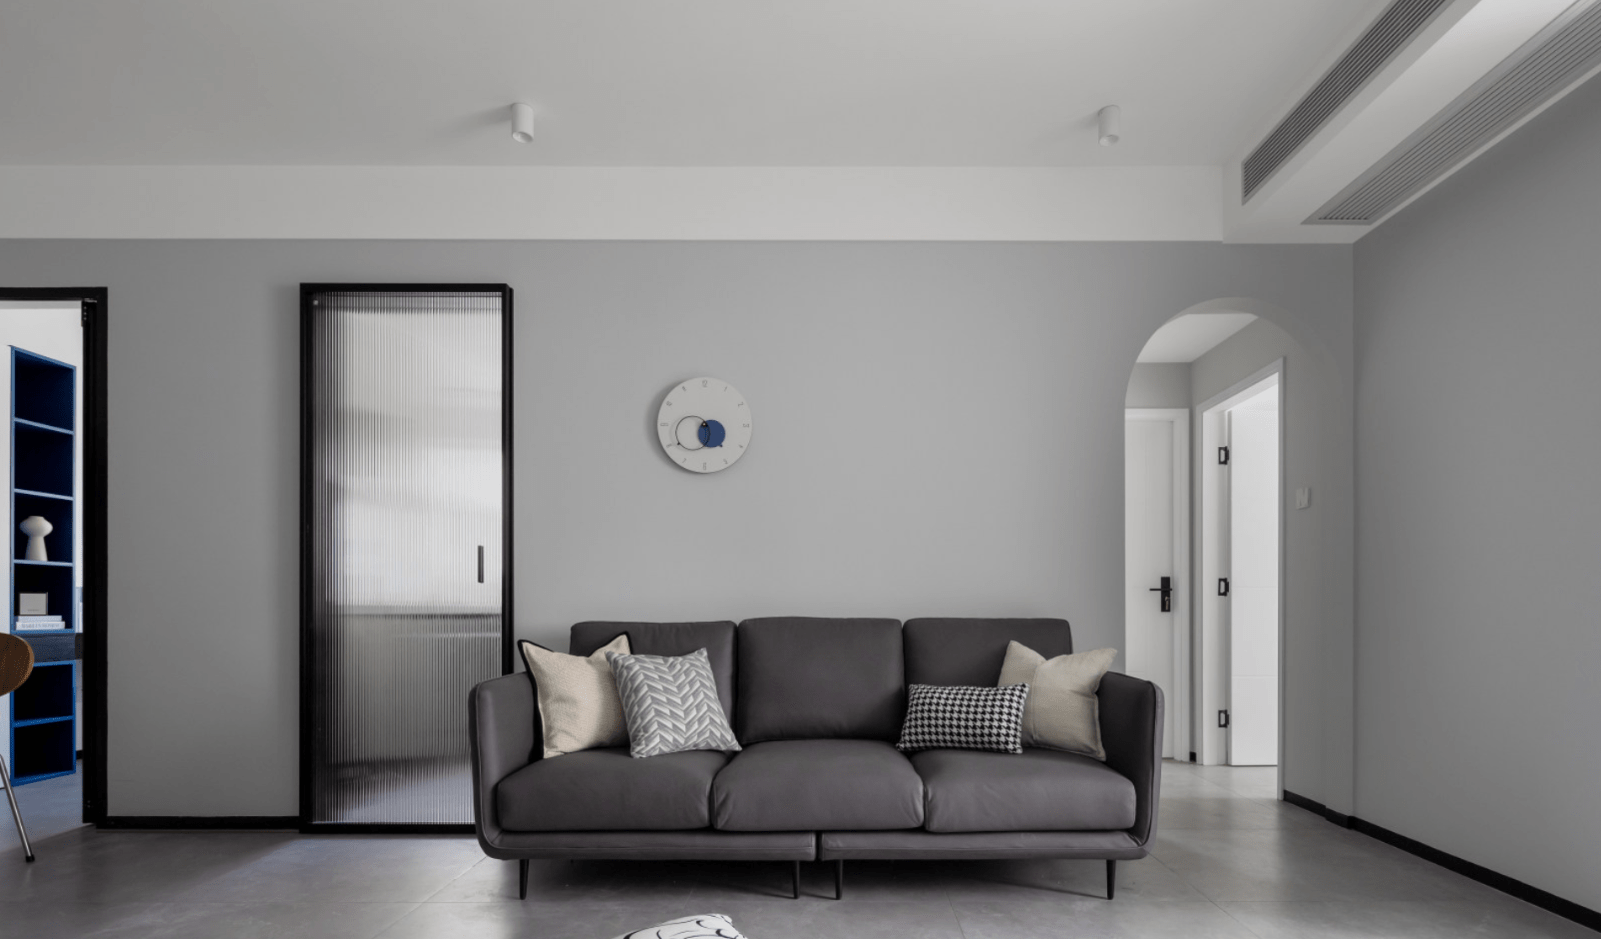 沙发墙刷上了灰色的乳胶漆,在空间大面积留白的基础上,可以让空间层次